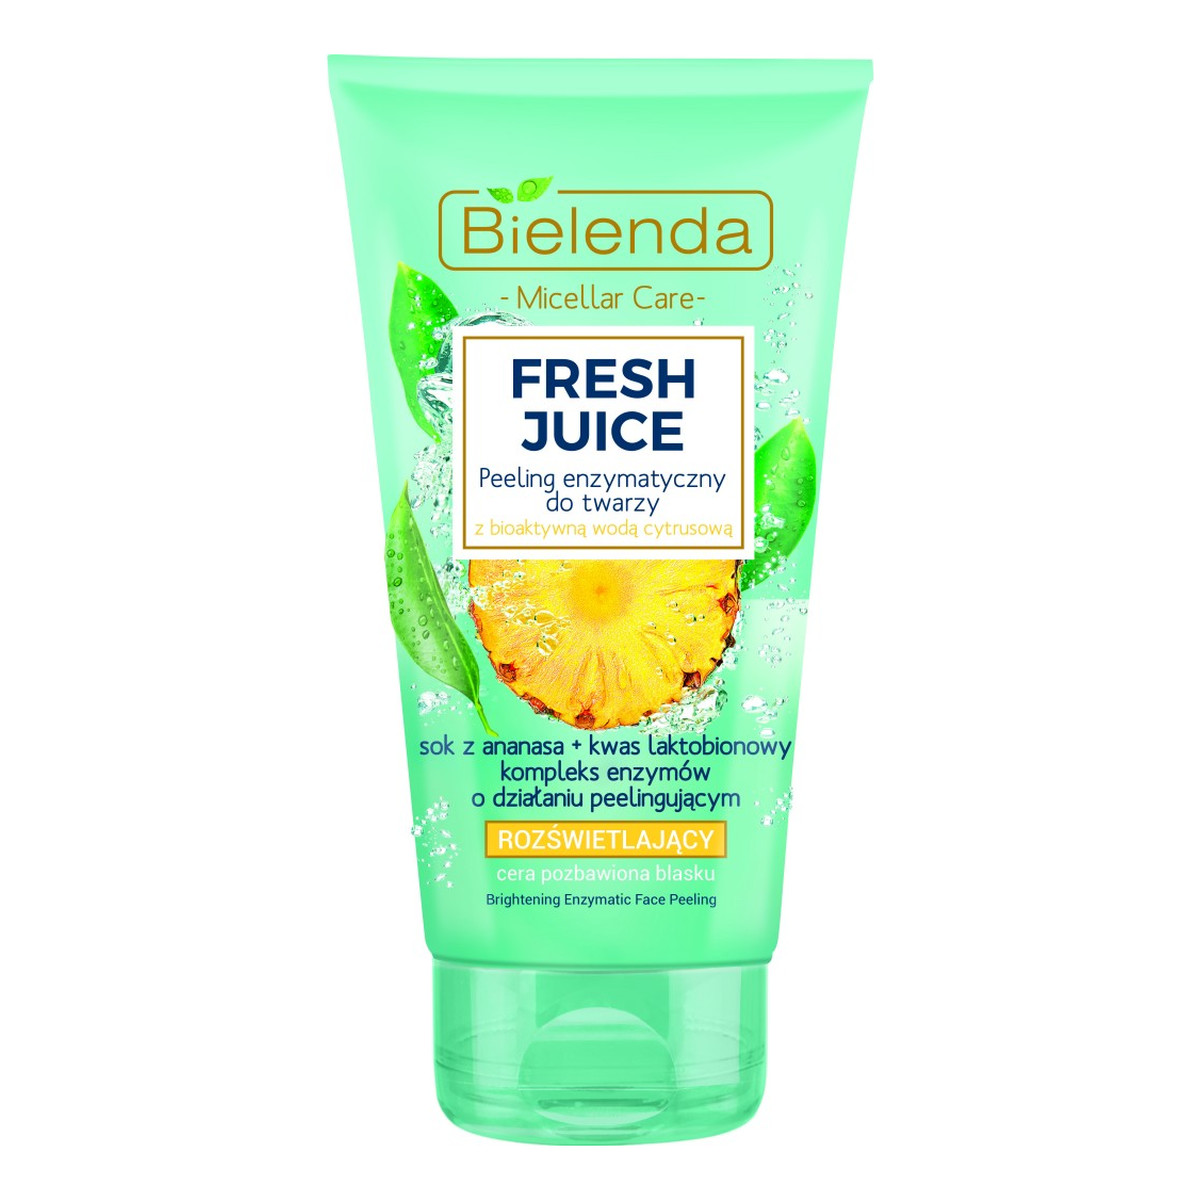 Bielenda Fresh Juice Peeling enzymatyczny rozświetlający z wodą cytrusową Ananas 150g